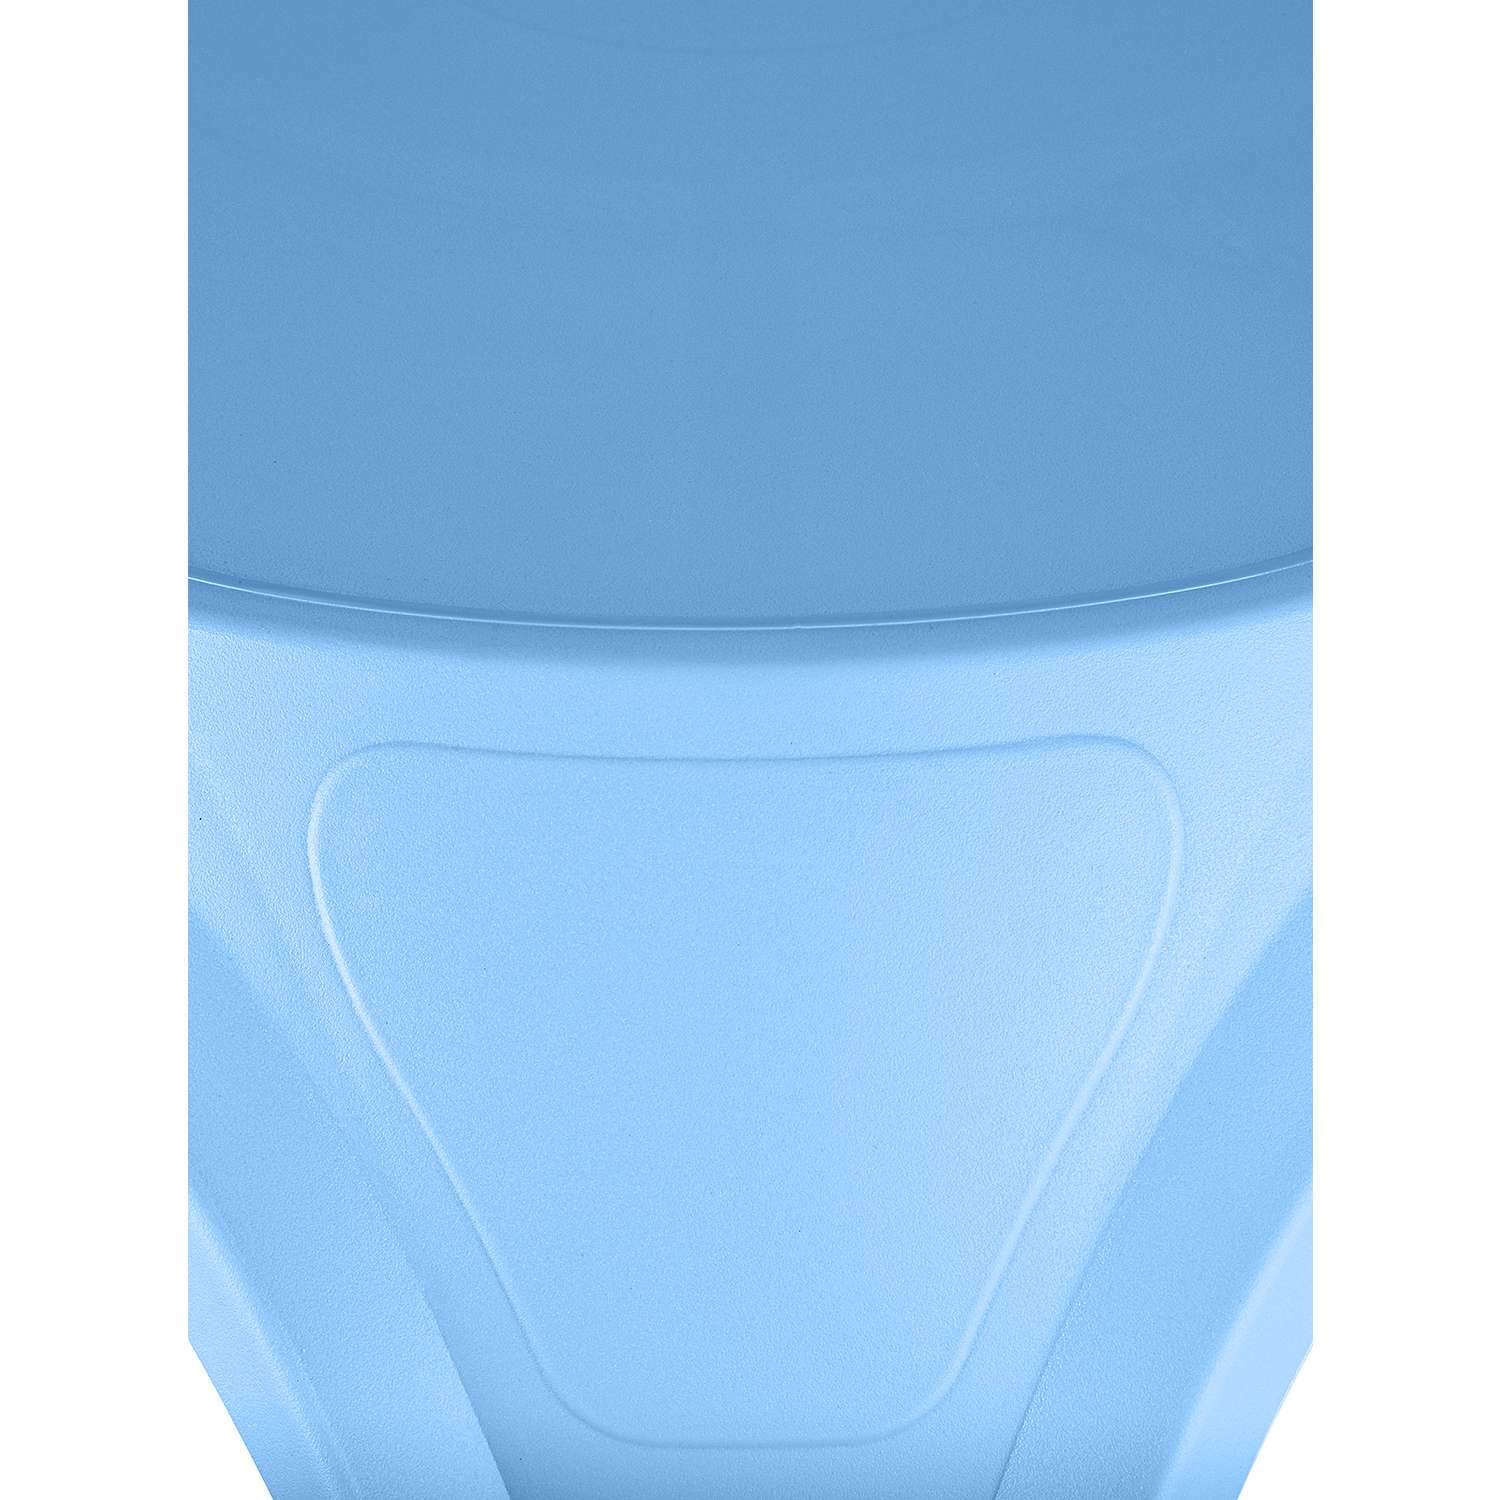 Стол десткий KETT-UP ОСЬМИНОЖКА пластиковый голубой - фото 3